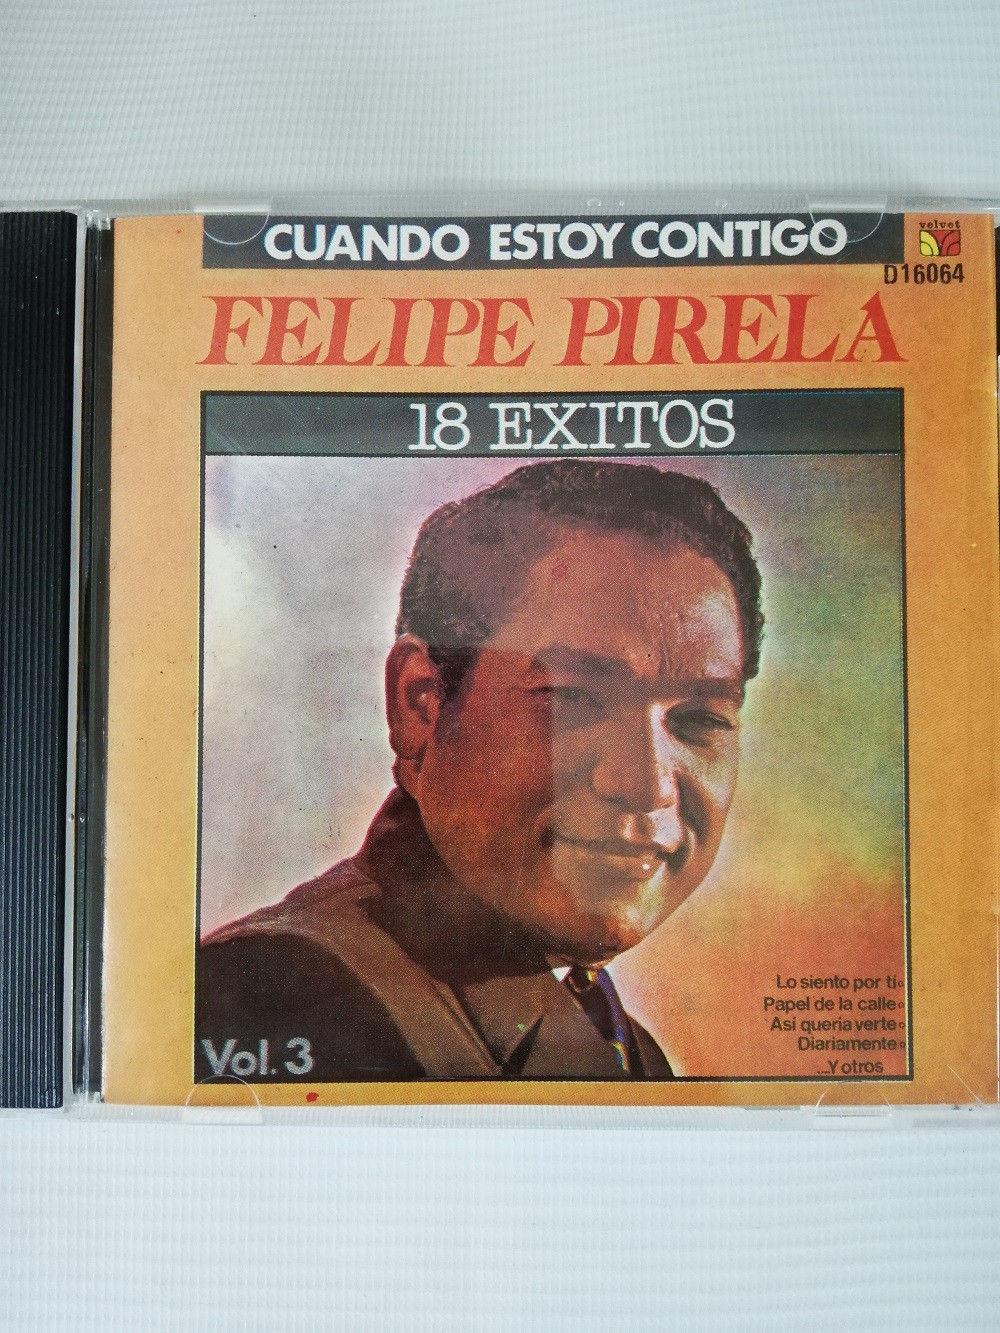 Imagen CD FELIPE PIRELA - 18 EXITOS VOL. 3